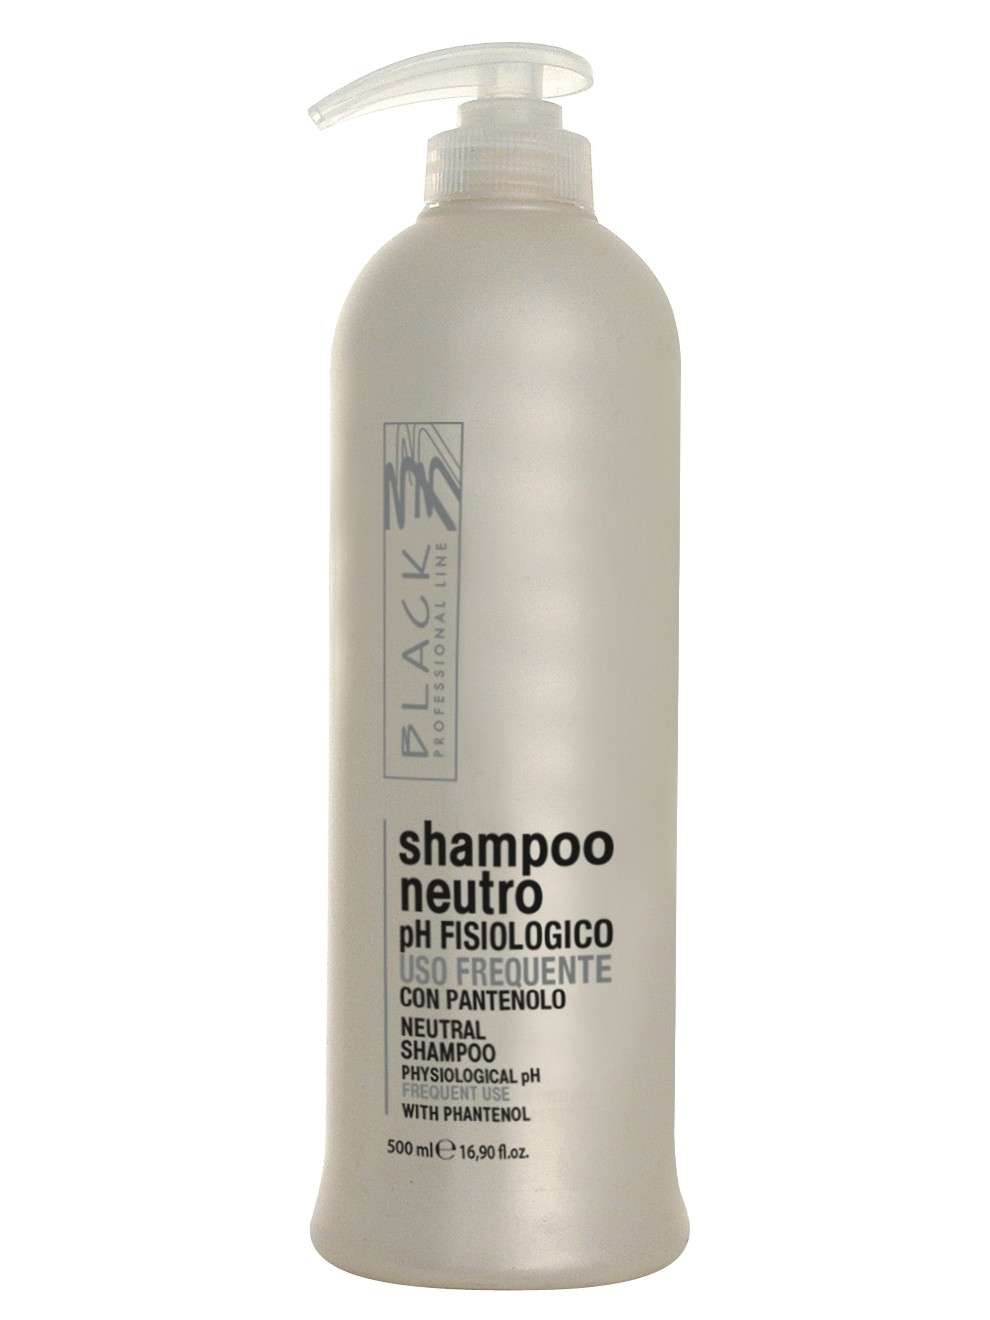 Šampon pro časté mytí vlasů Black Neutro - 500 ml (01246) + dárek zdarma